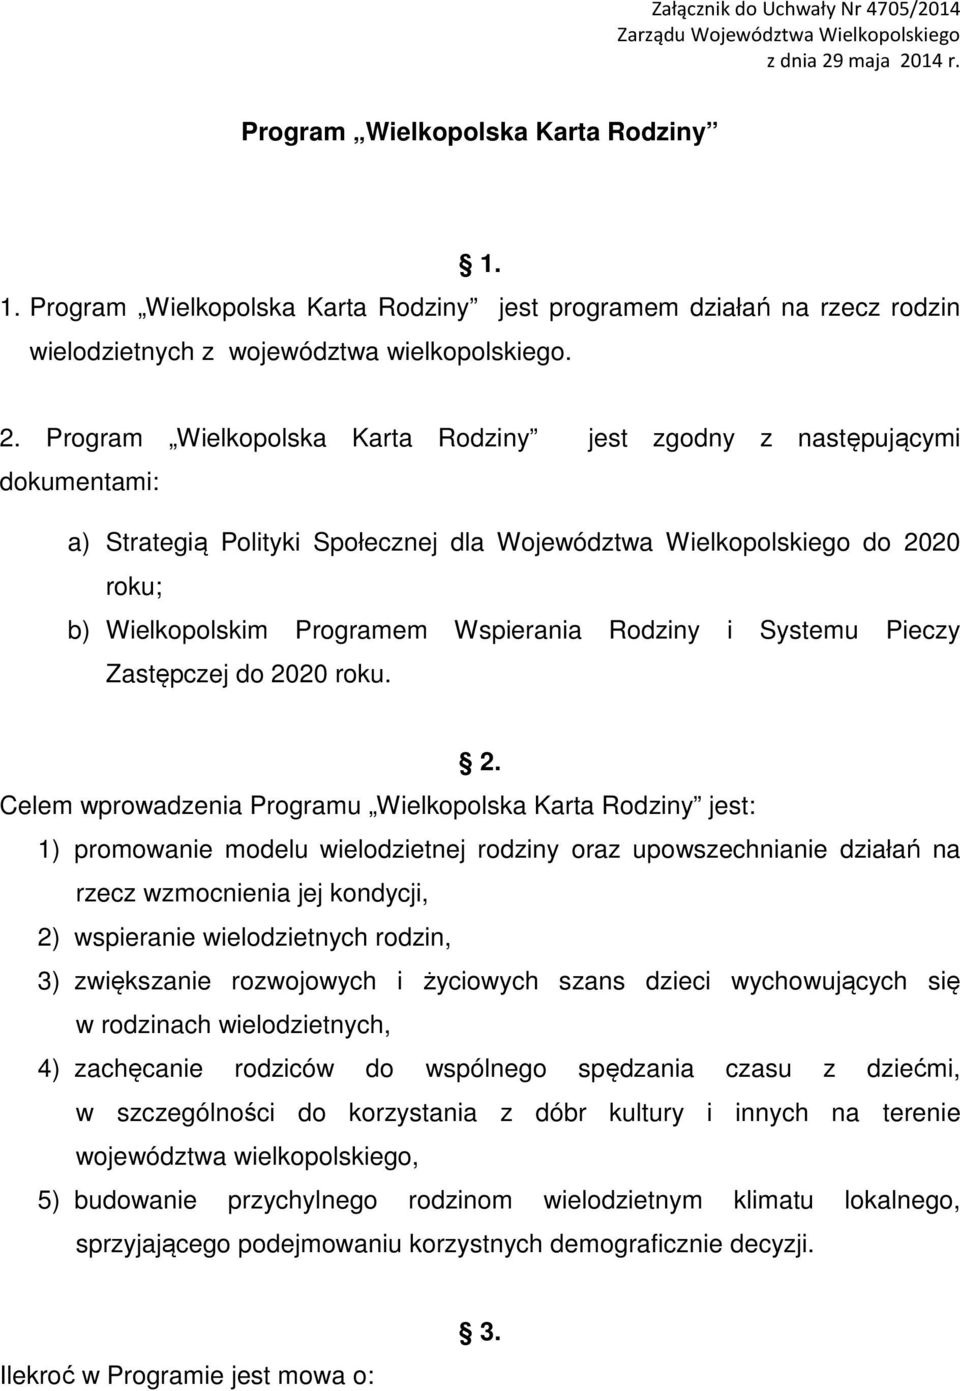 Program Wielkopolska Karta Rodziny jest zgodny z następującymi dokumentami: a) Strategią Polityki Społecznej dla Województwa Wielkopolskiego do 2020 roku; b) Wielkopolskim Programem Wspierania